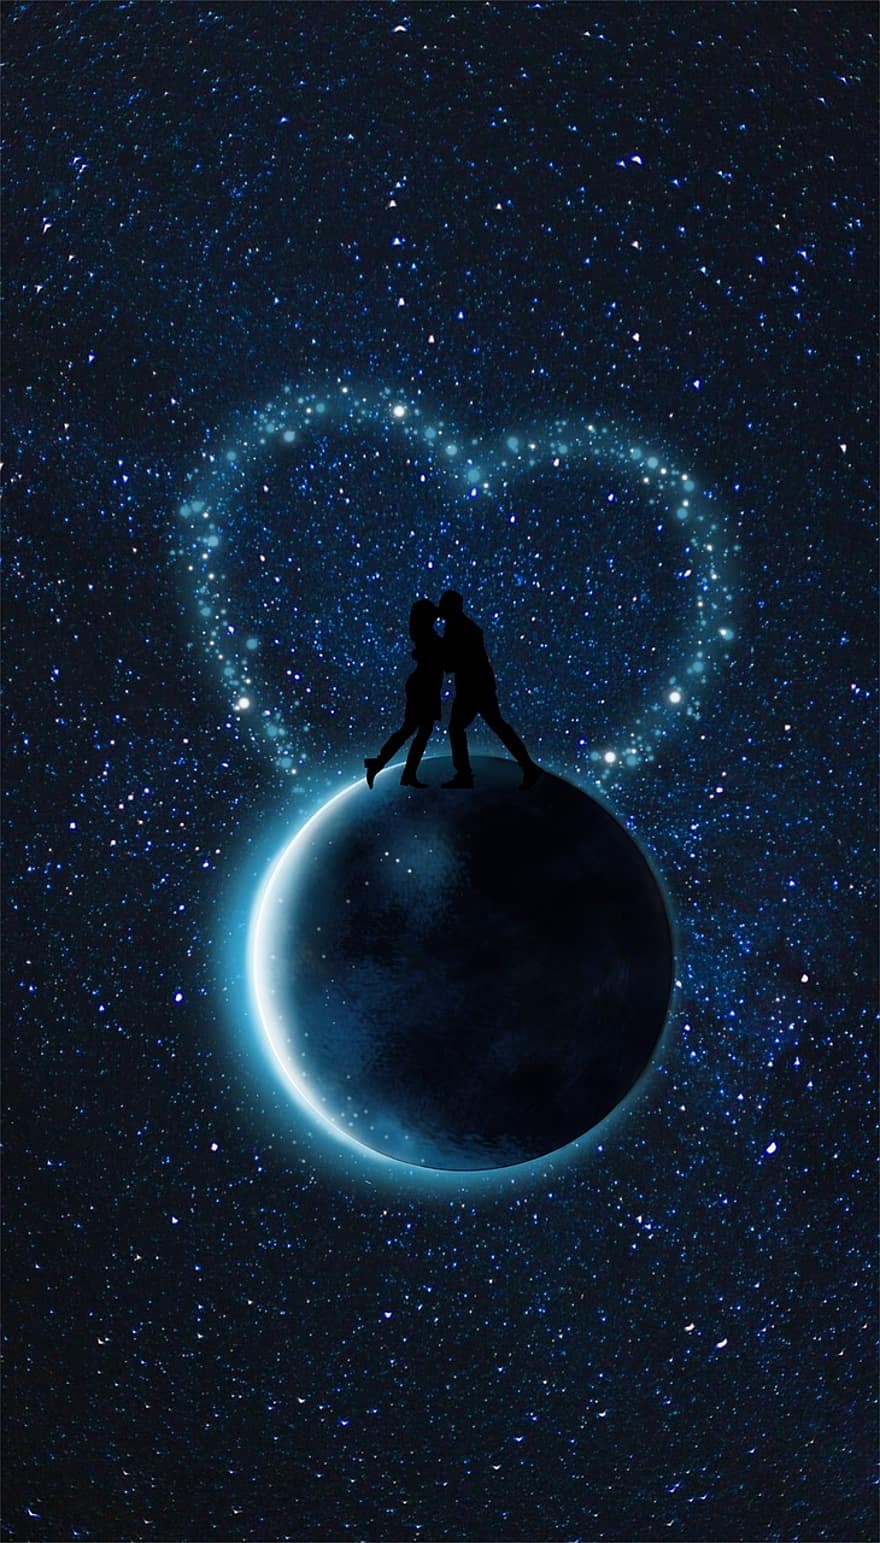 mặt trăng, cặp đôi, tim, màu xanh da trời, vũ trụ, ngôi sao, tỏa sáng, yêu và quý, Những nụ hôn, lãng mạn